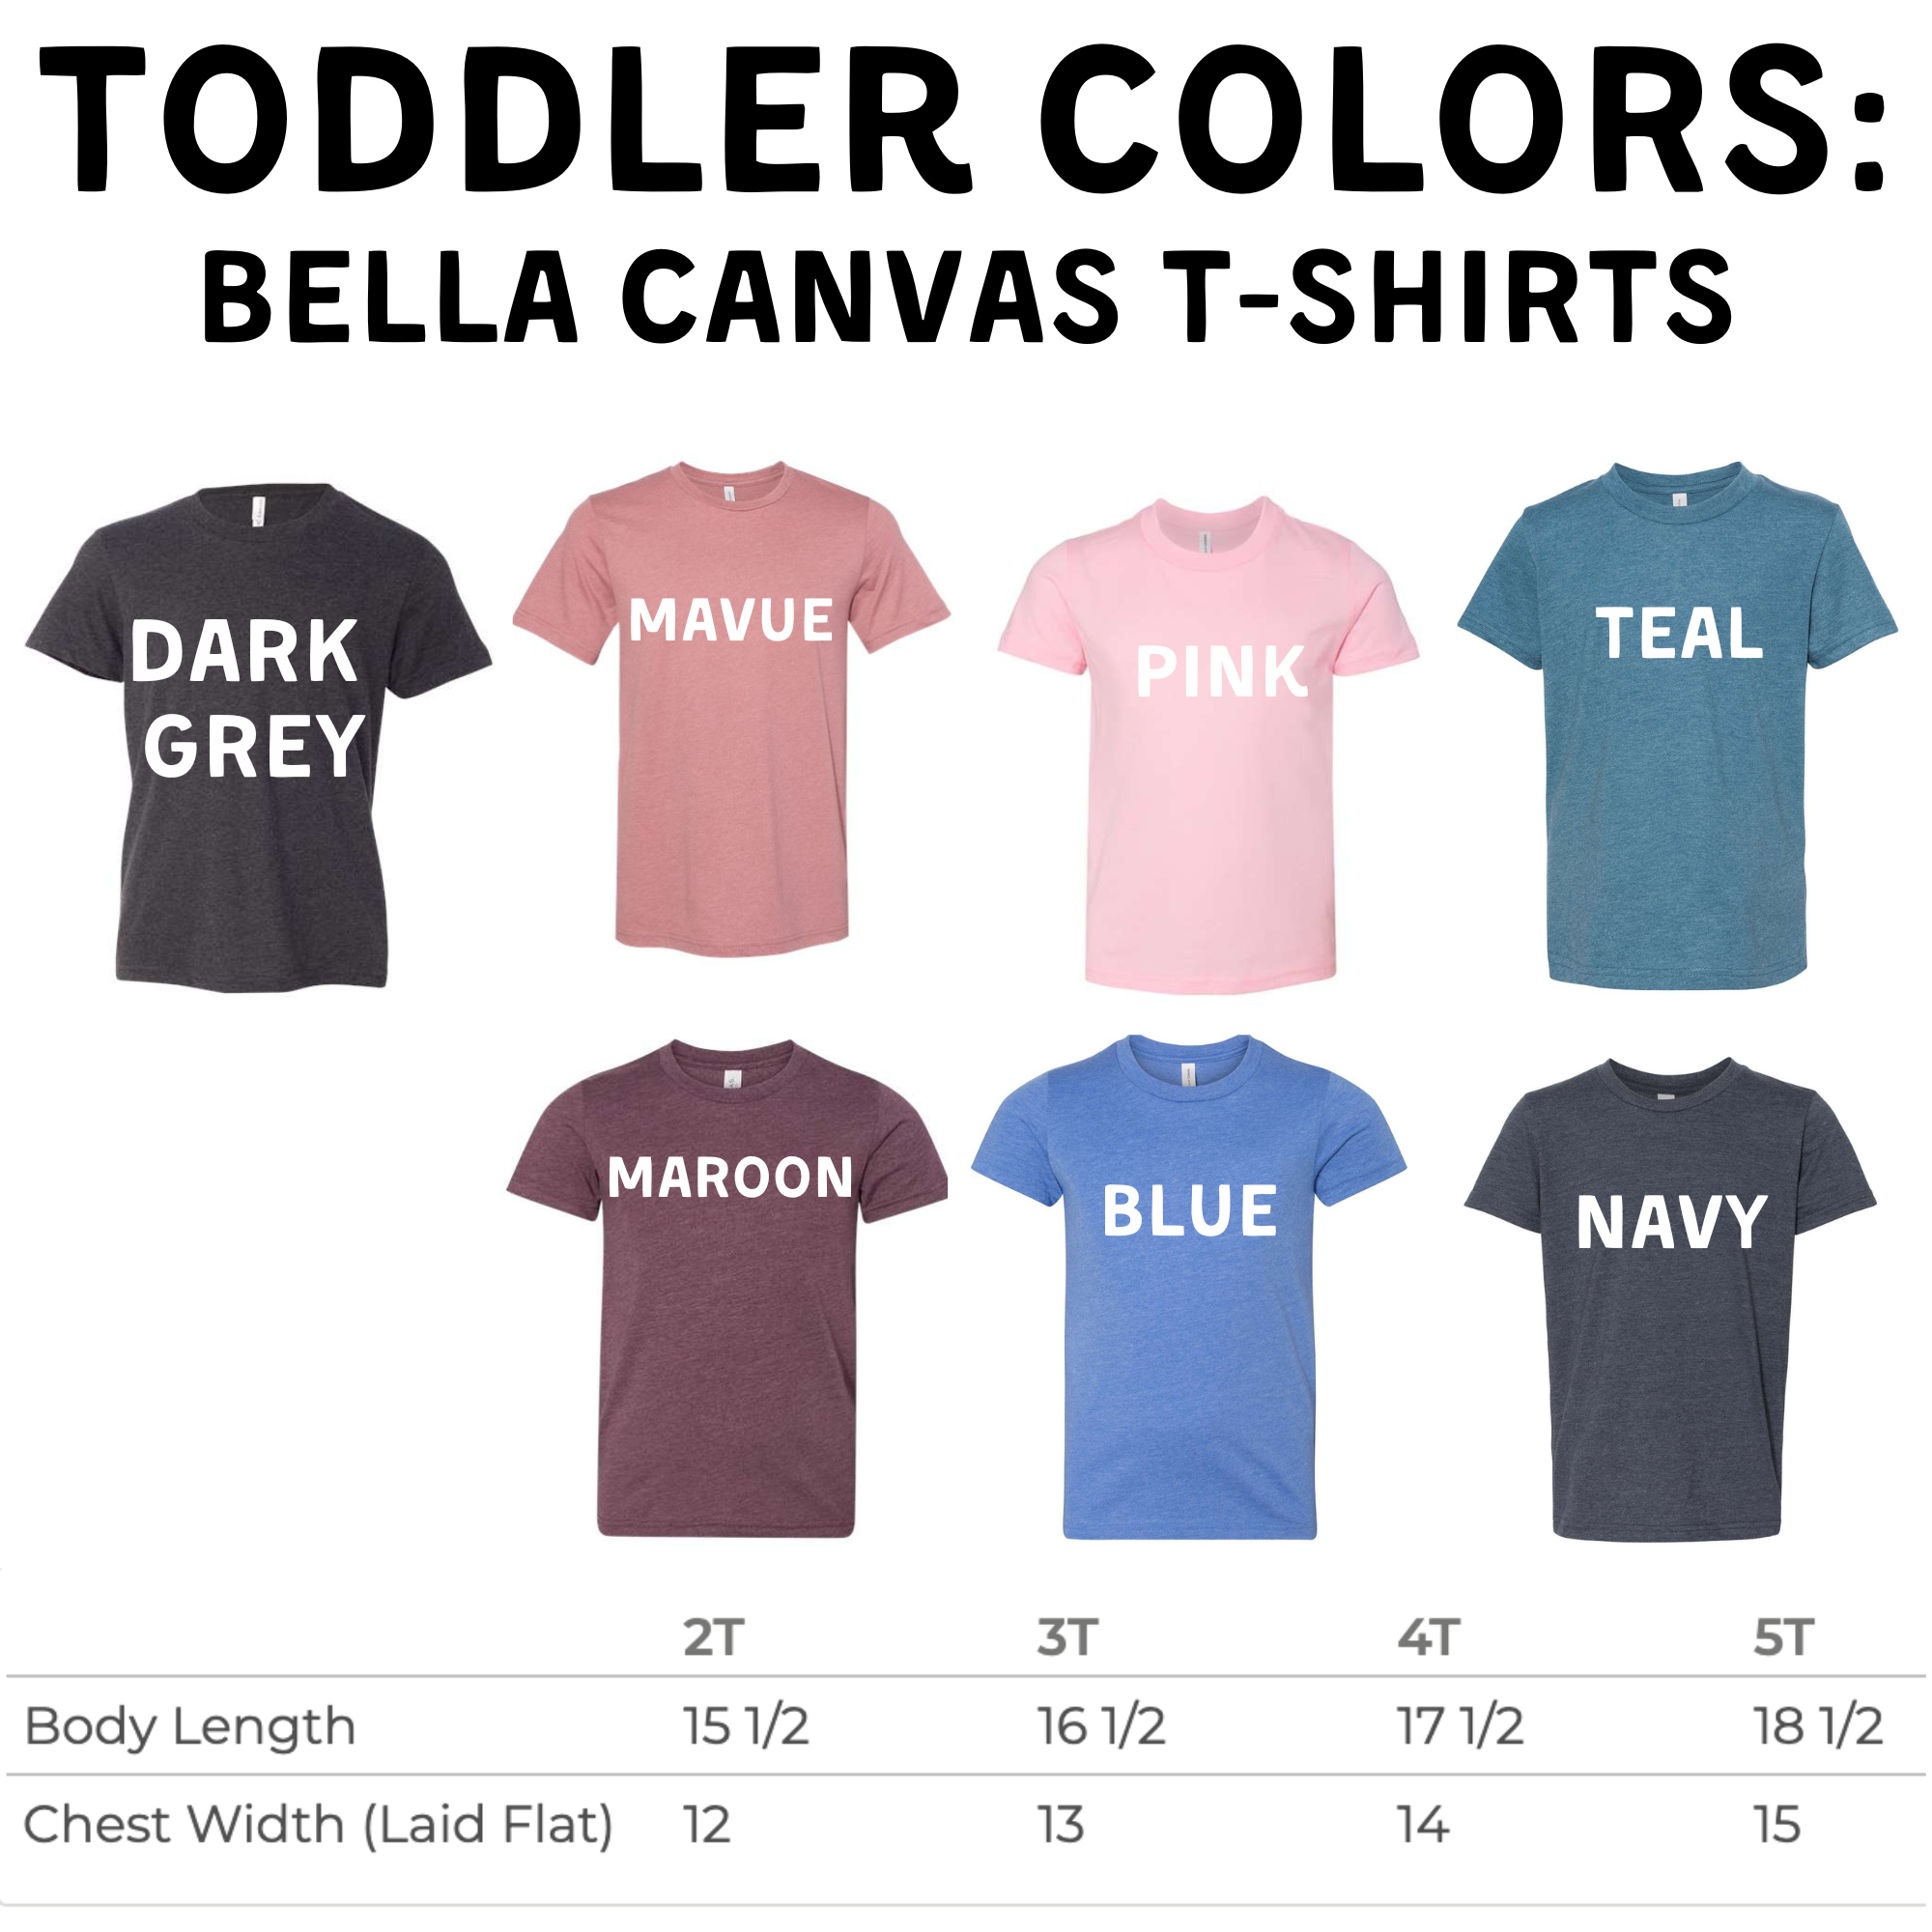 Wild Toddler TShirt-Baby & Toddler-208 Tees Wholesale, Idaho